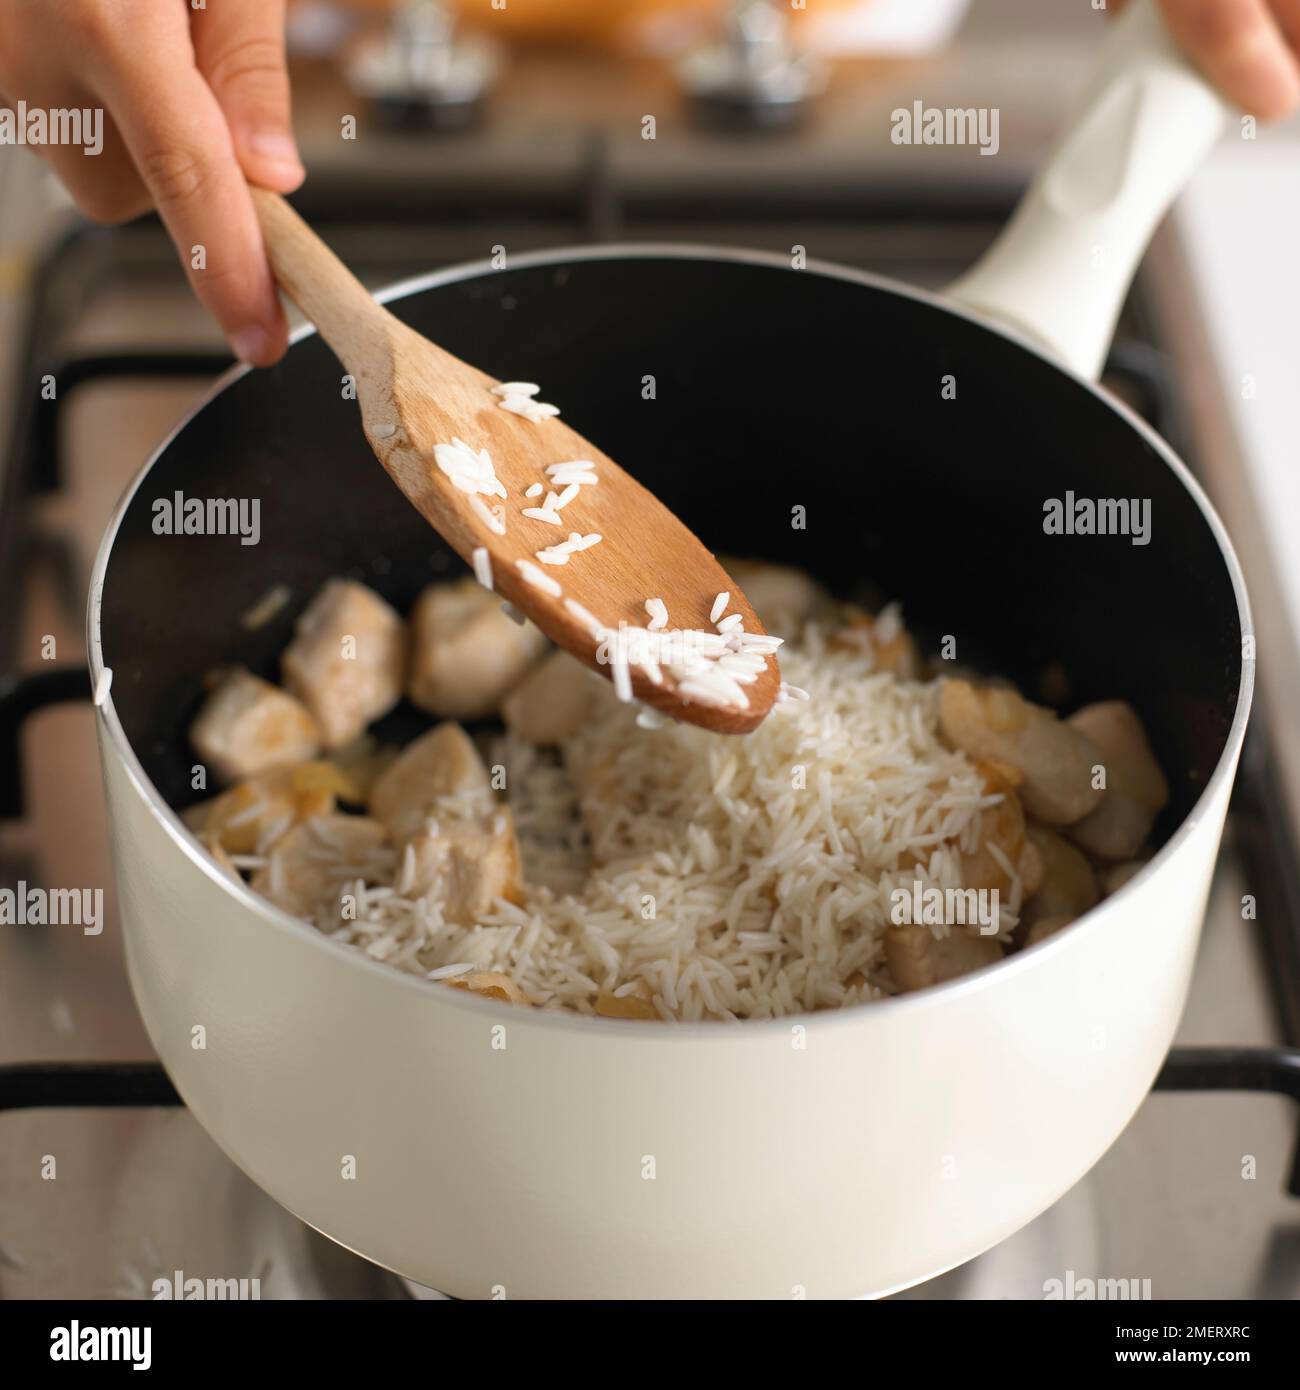 Hähnchen-Risotto machen, Reis und Hähnchen zusammen in einem Topf kochen Stockfoto